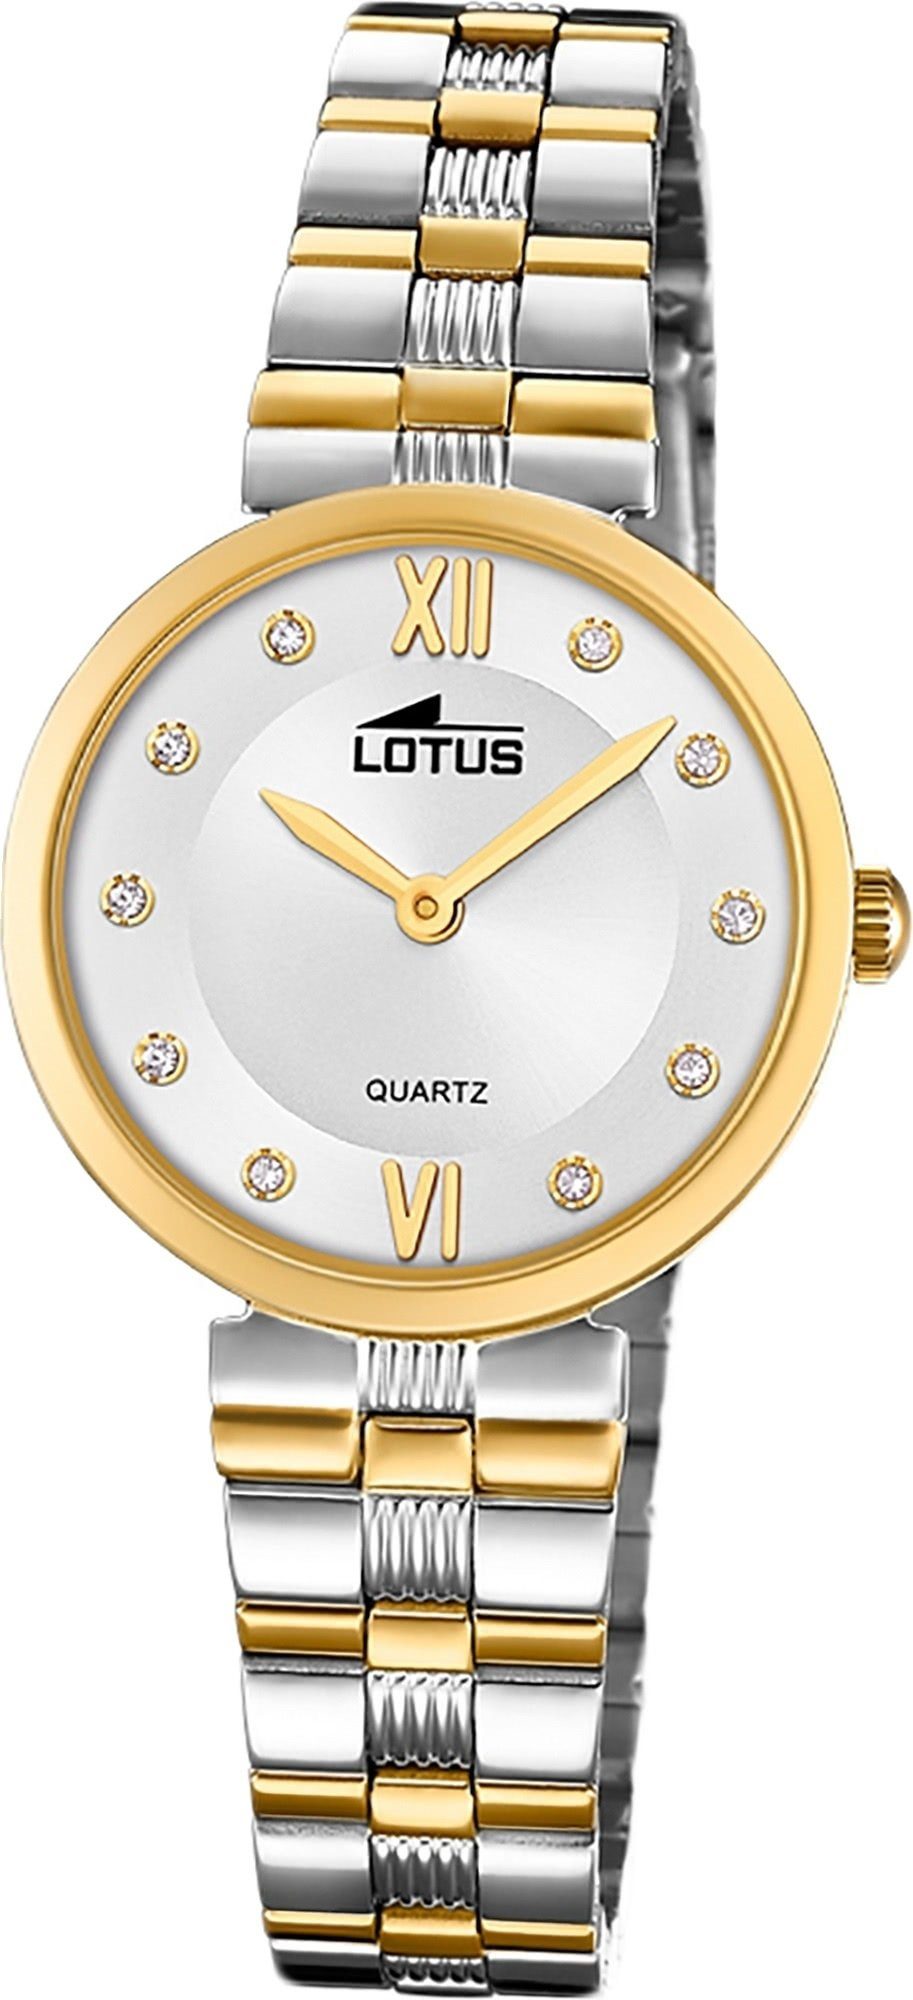 Lotus Quarzuhr LOTUS Edelstahl Damen Uhr 18542/3, Damenuhr mit Edelstahlarmband, rundes Gehäuse, klein (ca. 29mm), Fashi